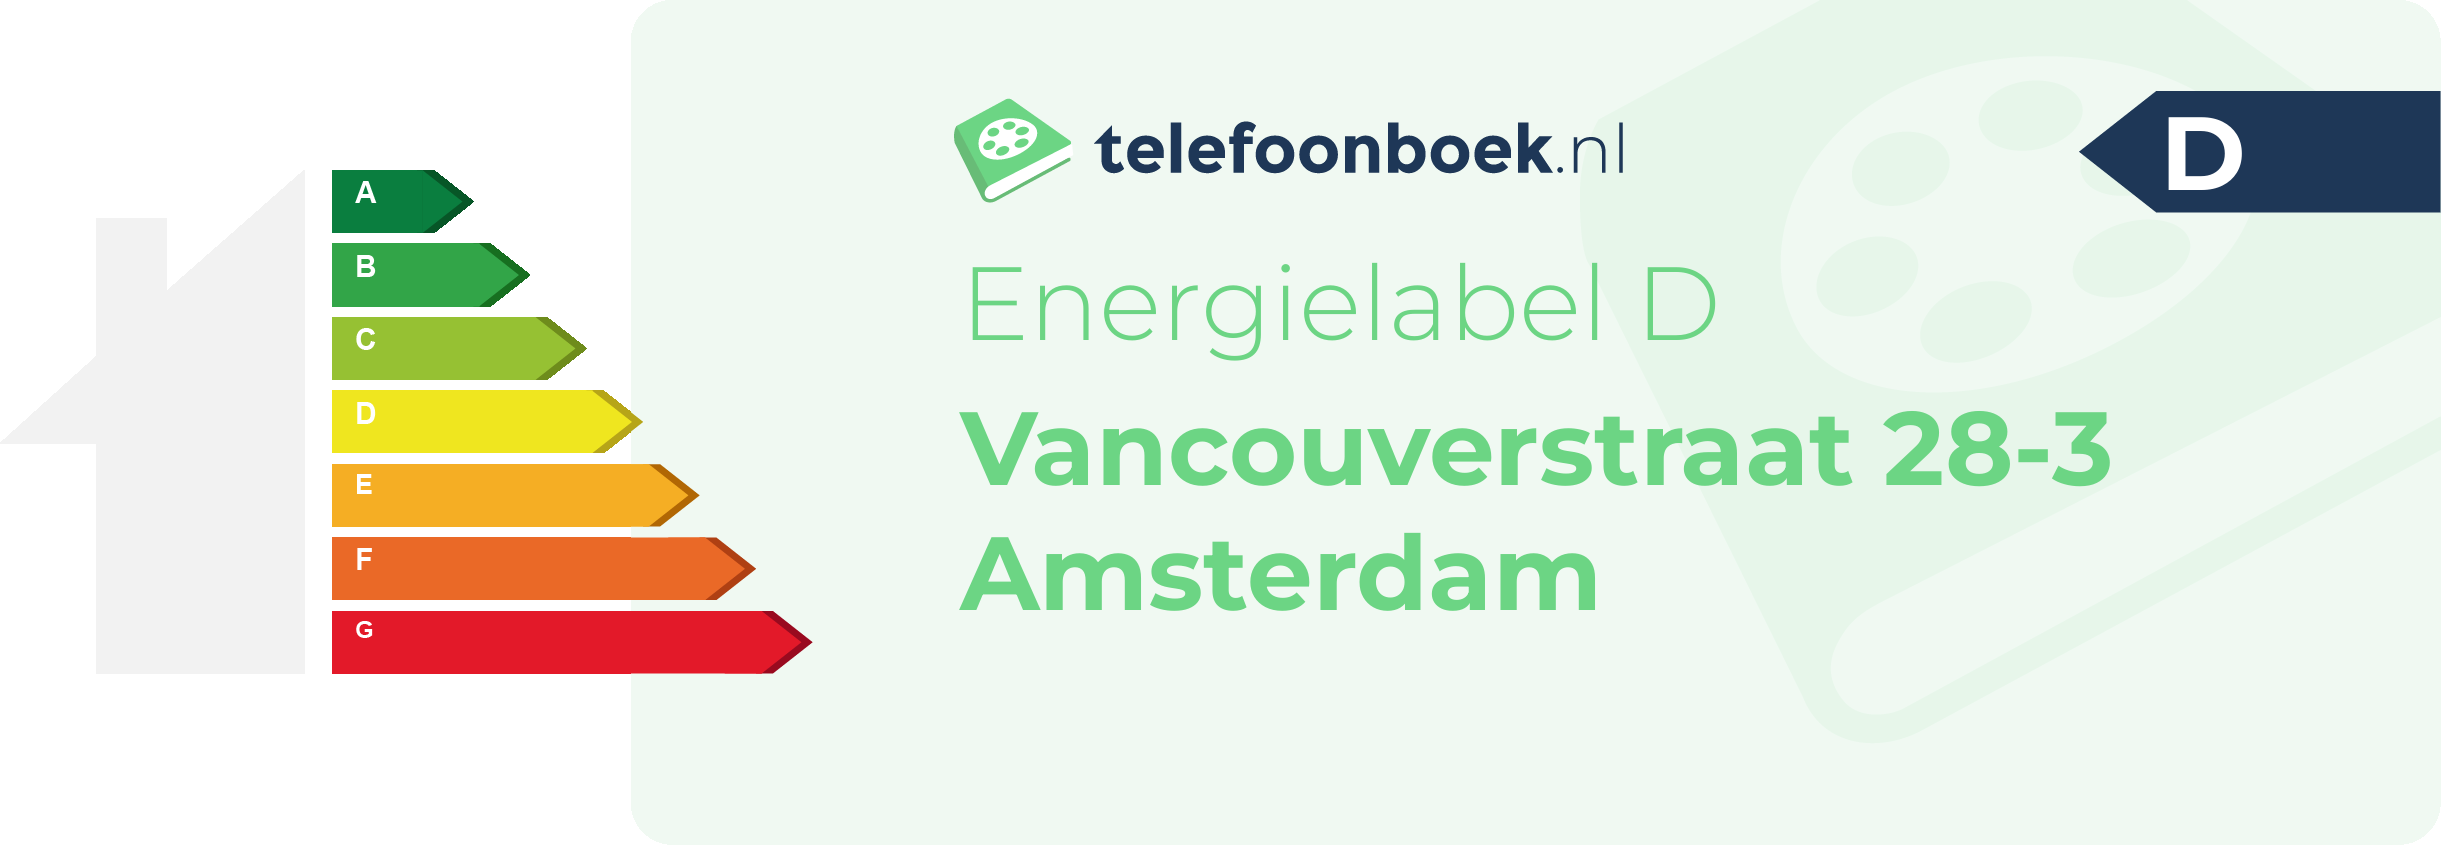 Energielabel Vancouverstraat 28-3 Amsterdam